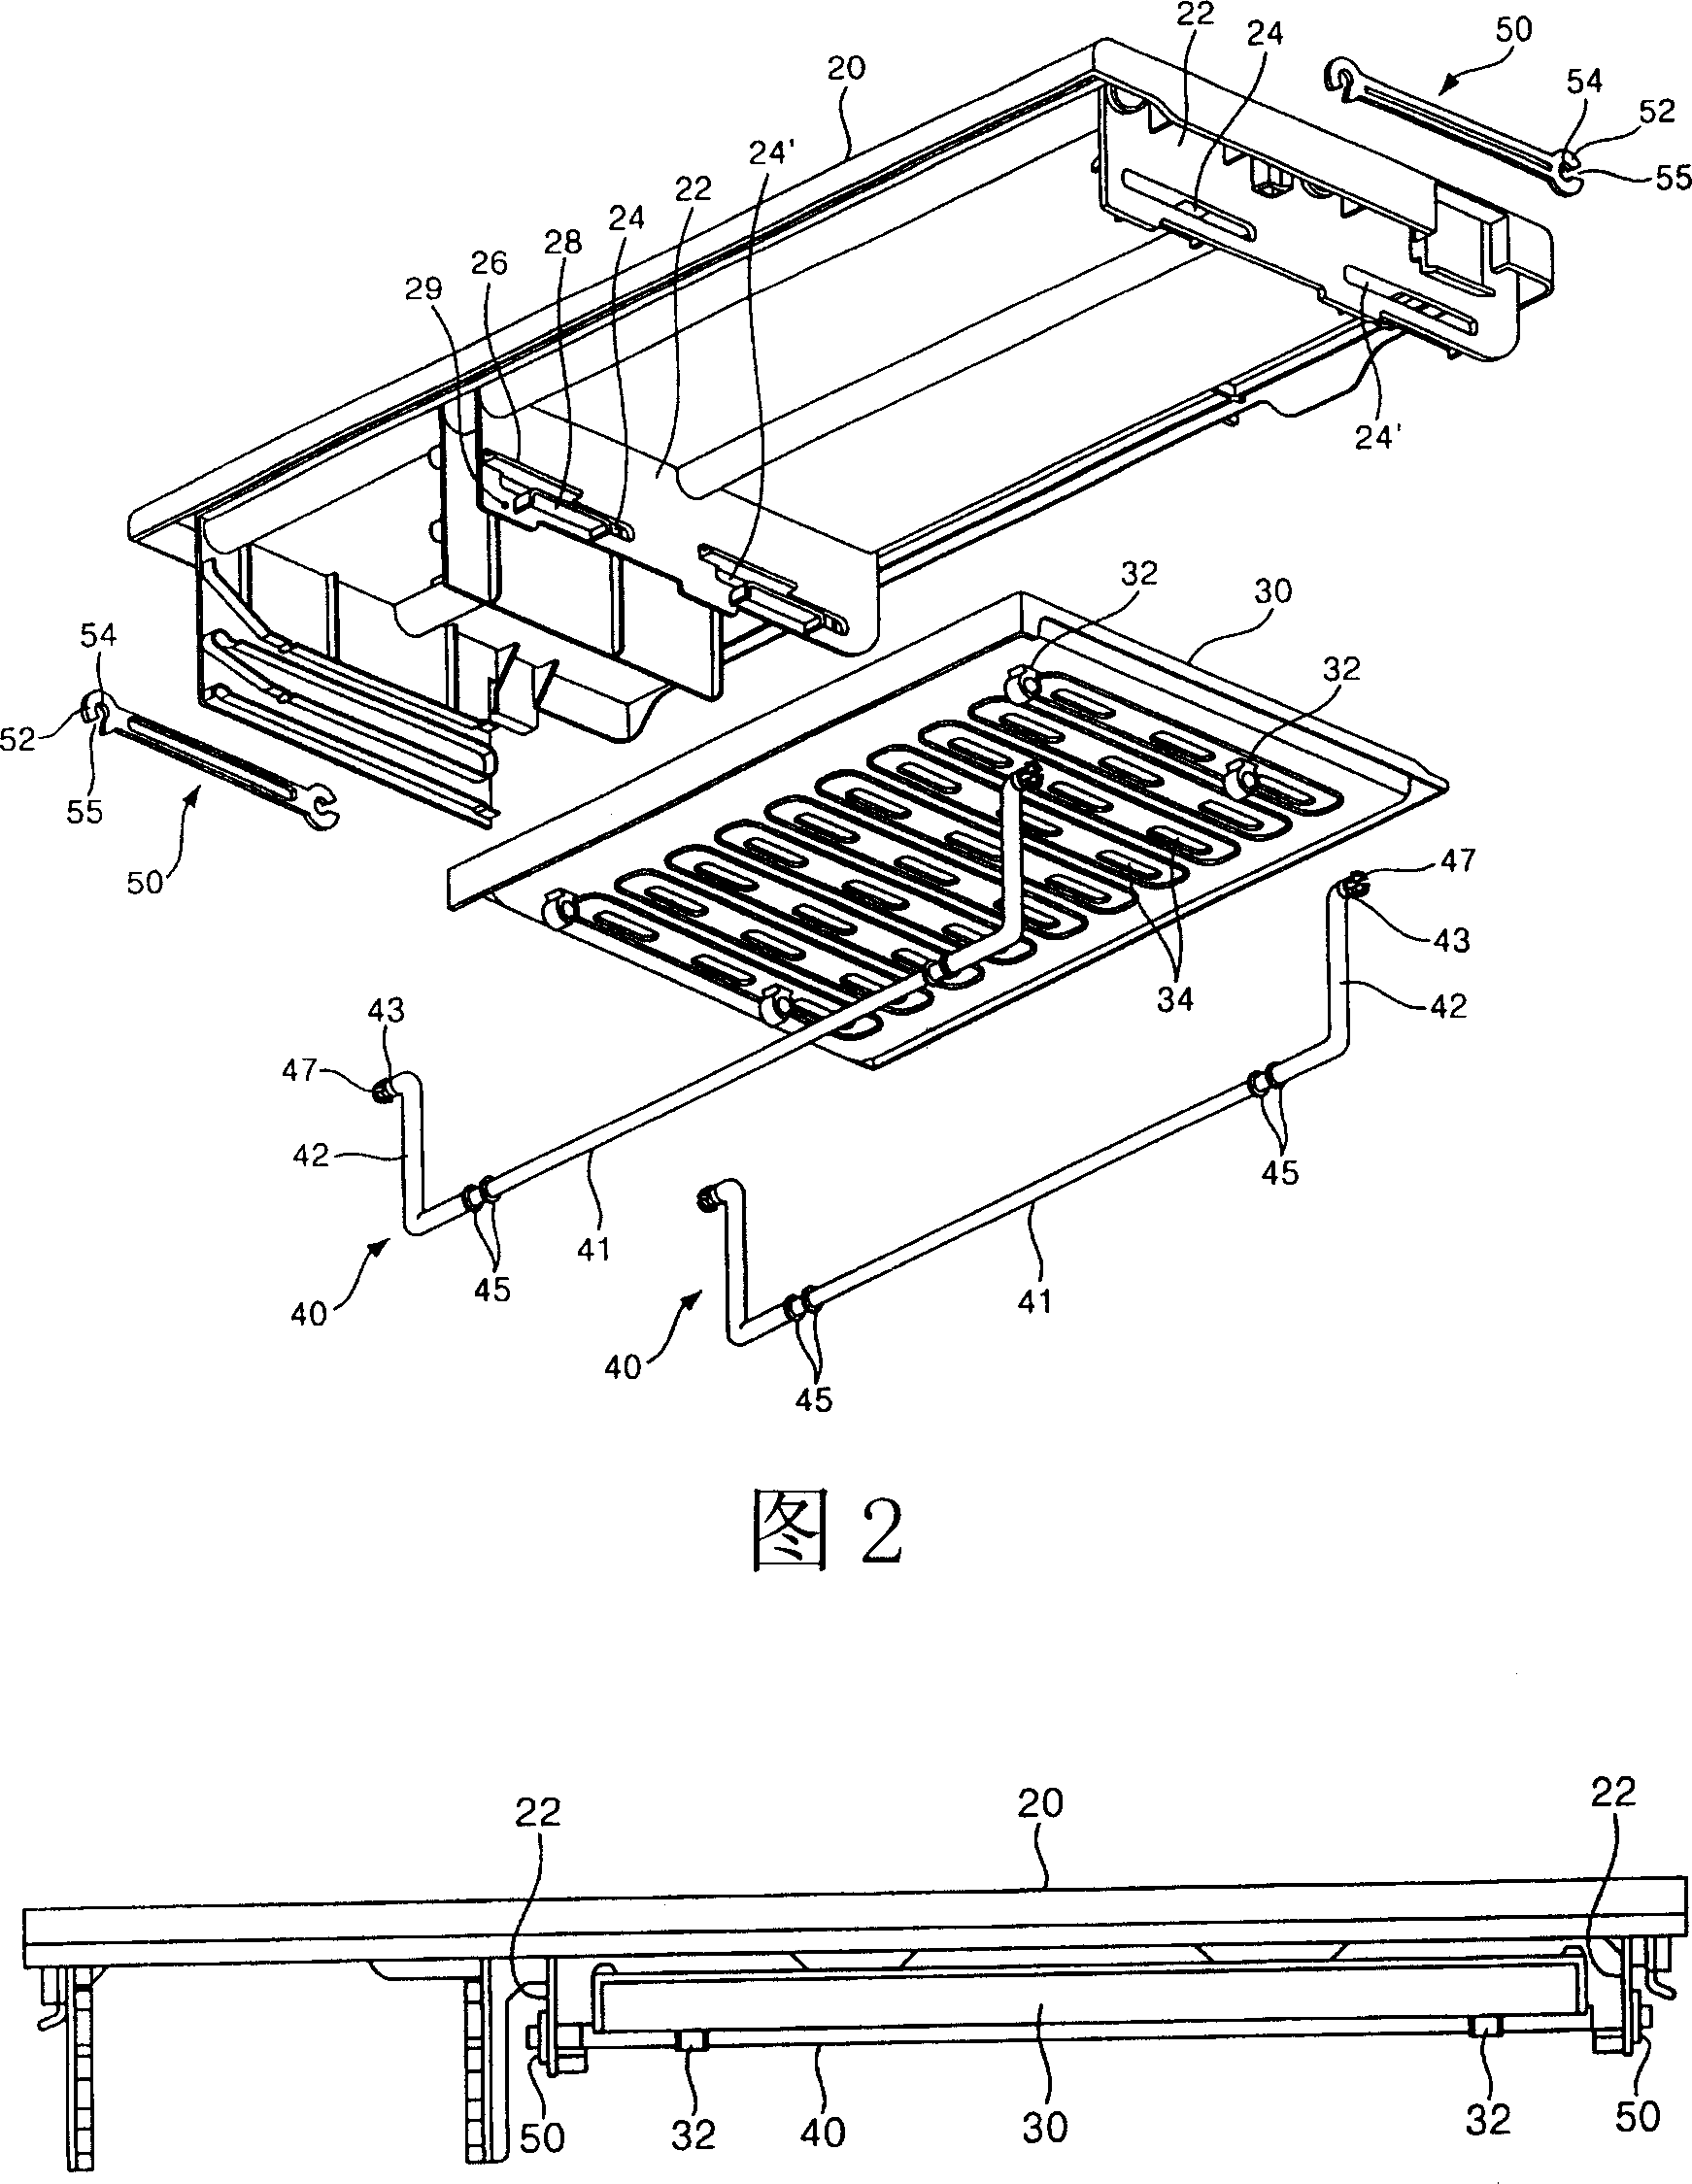 Subsidiary shelf board assembly of refrigerator